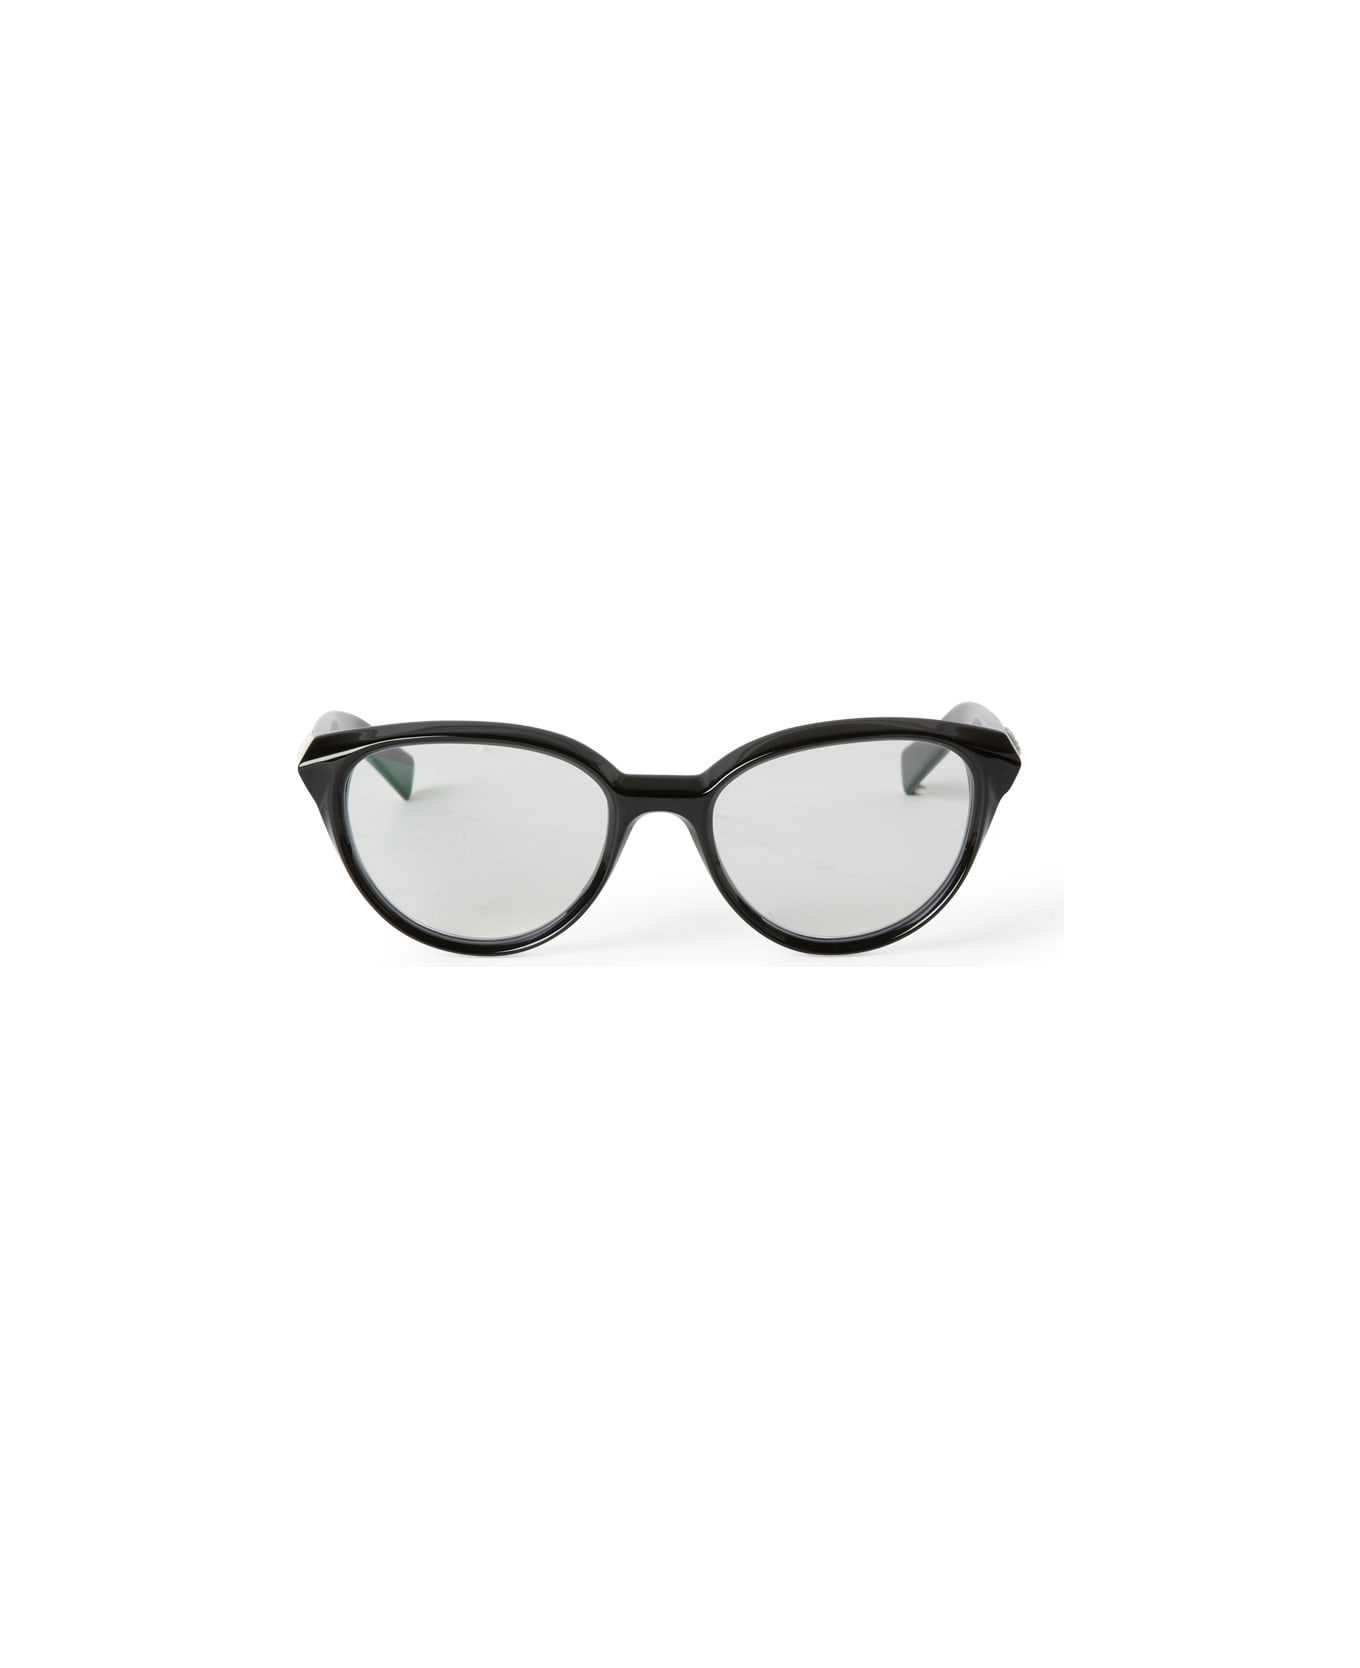 Off-White OPTICAL STYLE 26 Eyewear - Black